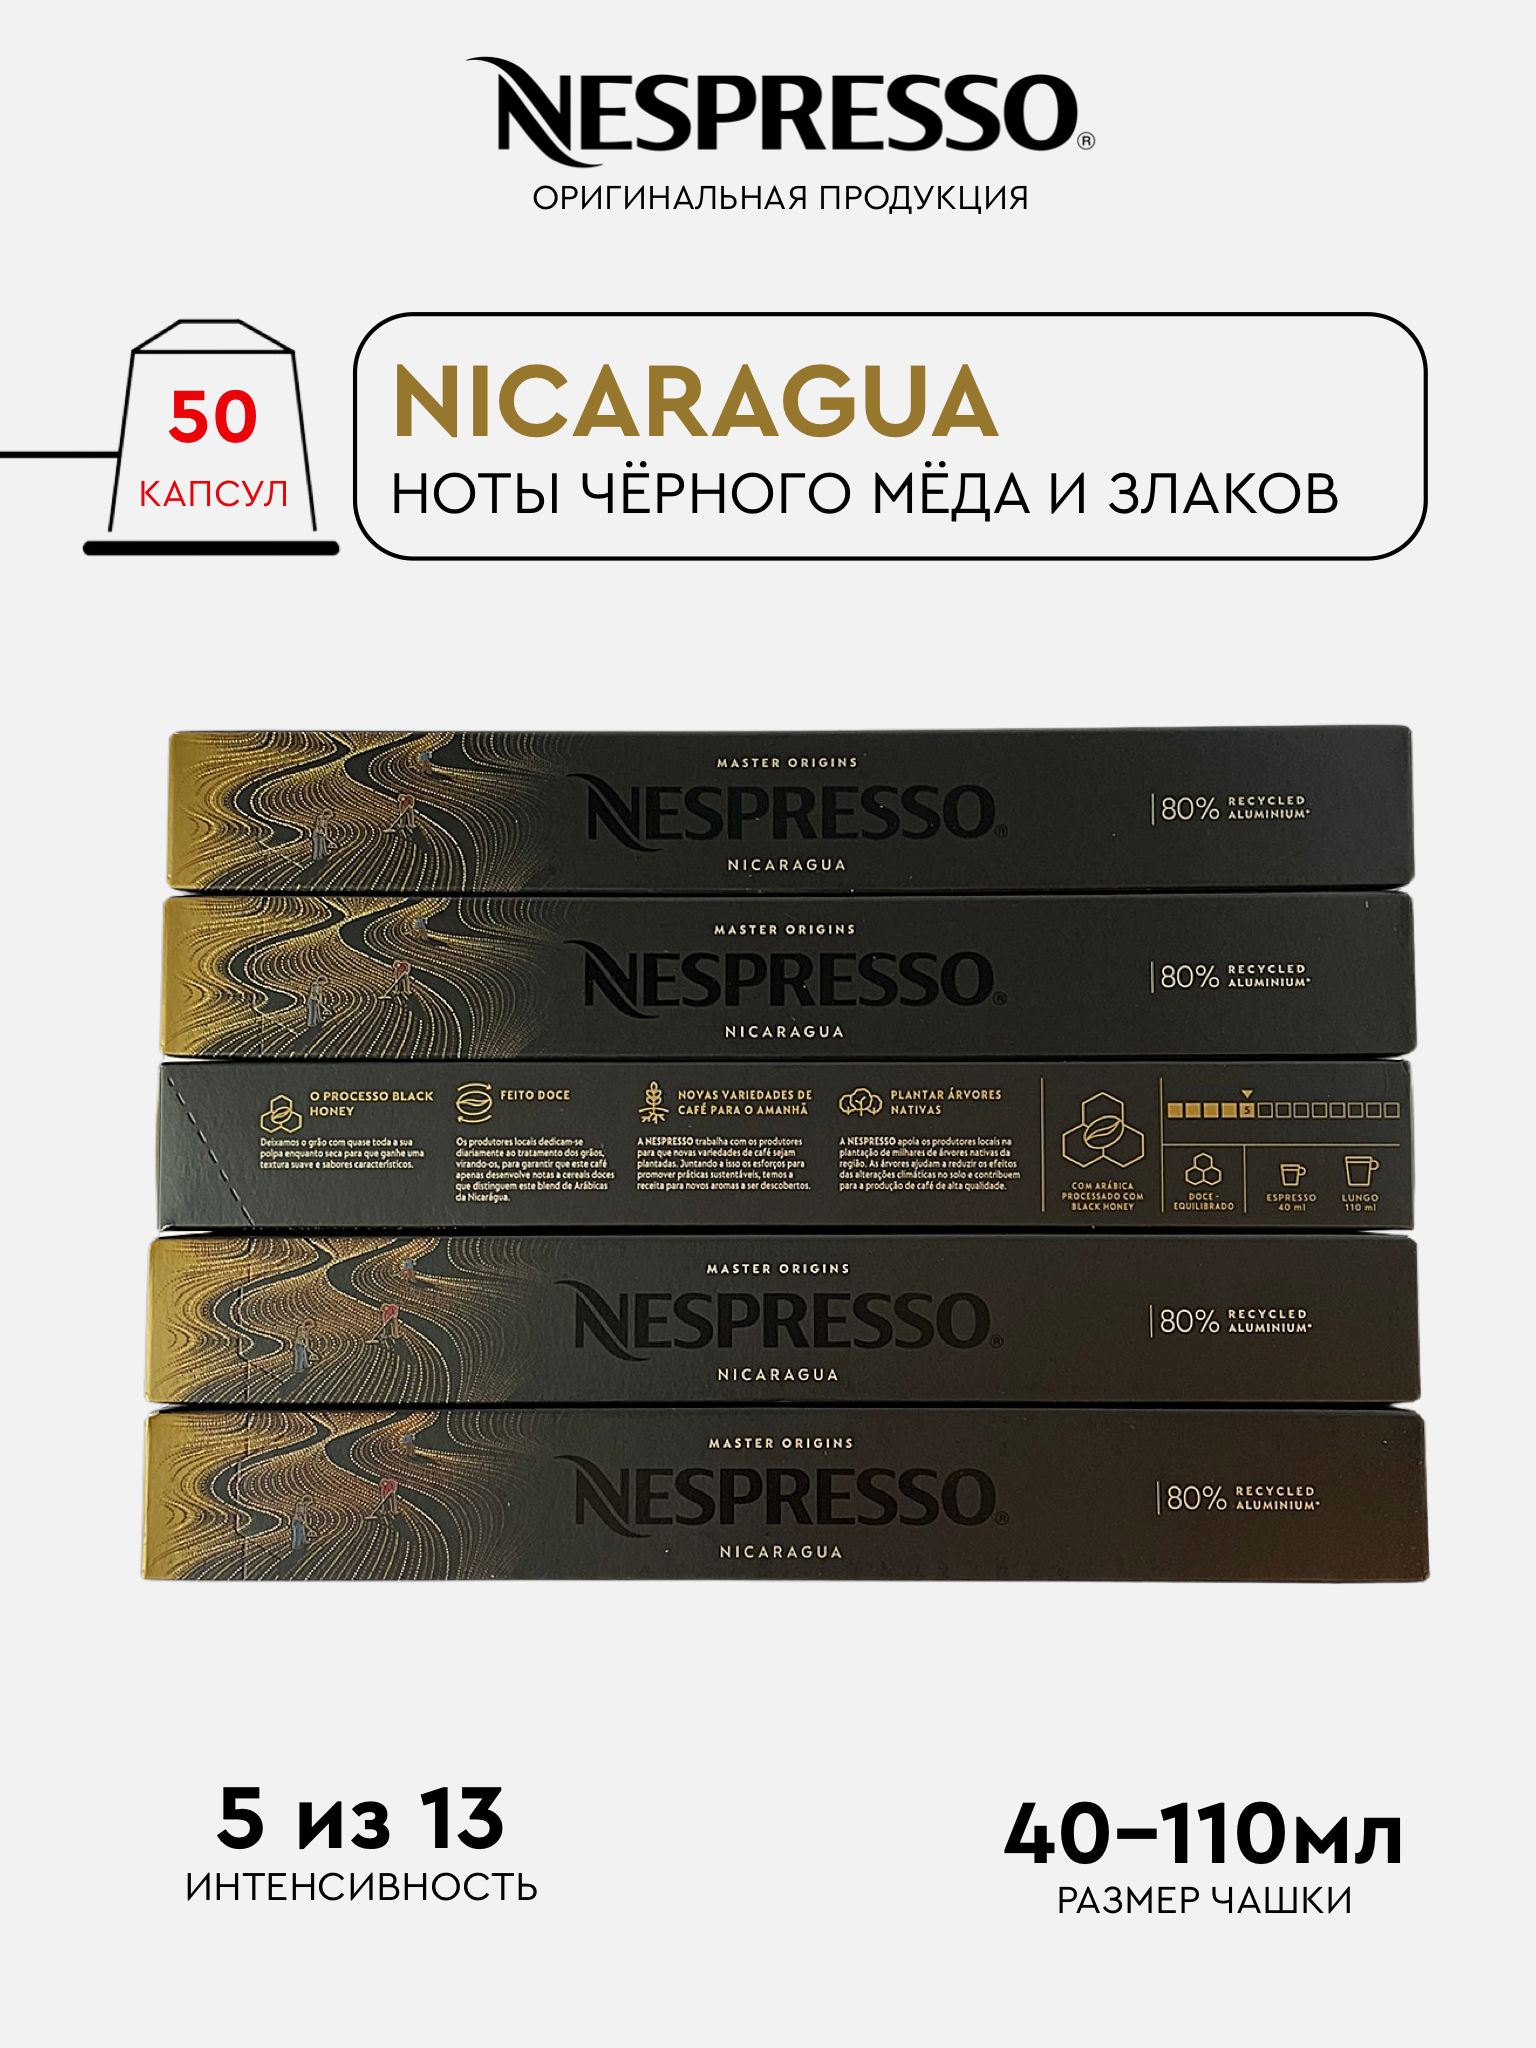 Капсулы Nespresso Nicaragua для кофемашины Nespresso Original, 50 капсул